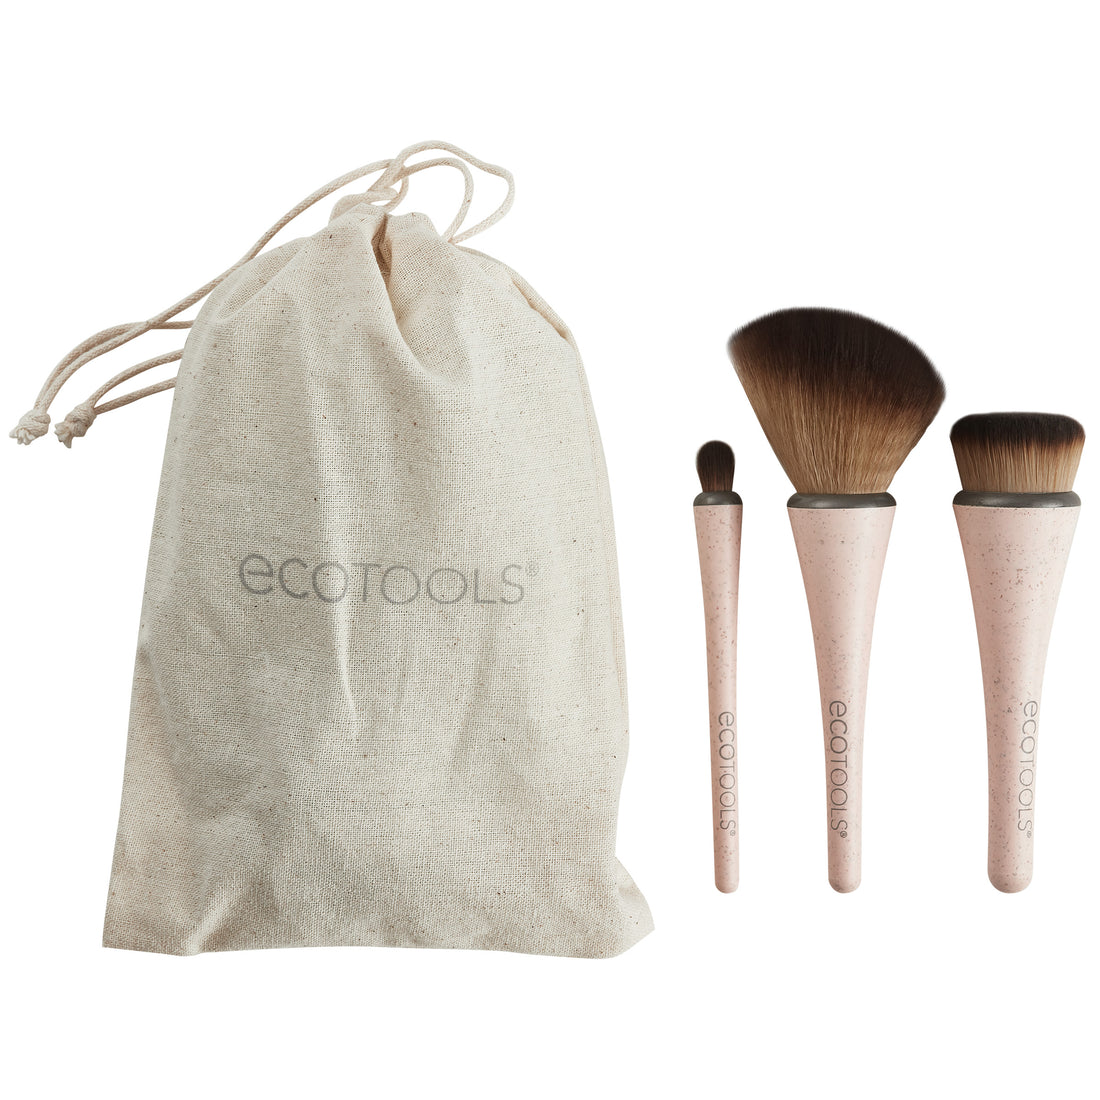 360 Ultimate Compact Hemp Makeup Brush Kit – EcoTools Beauty